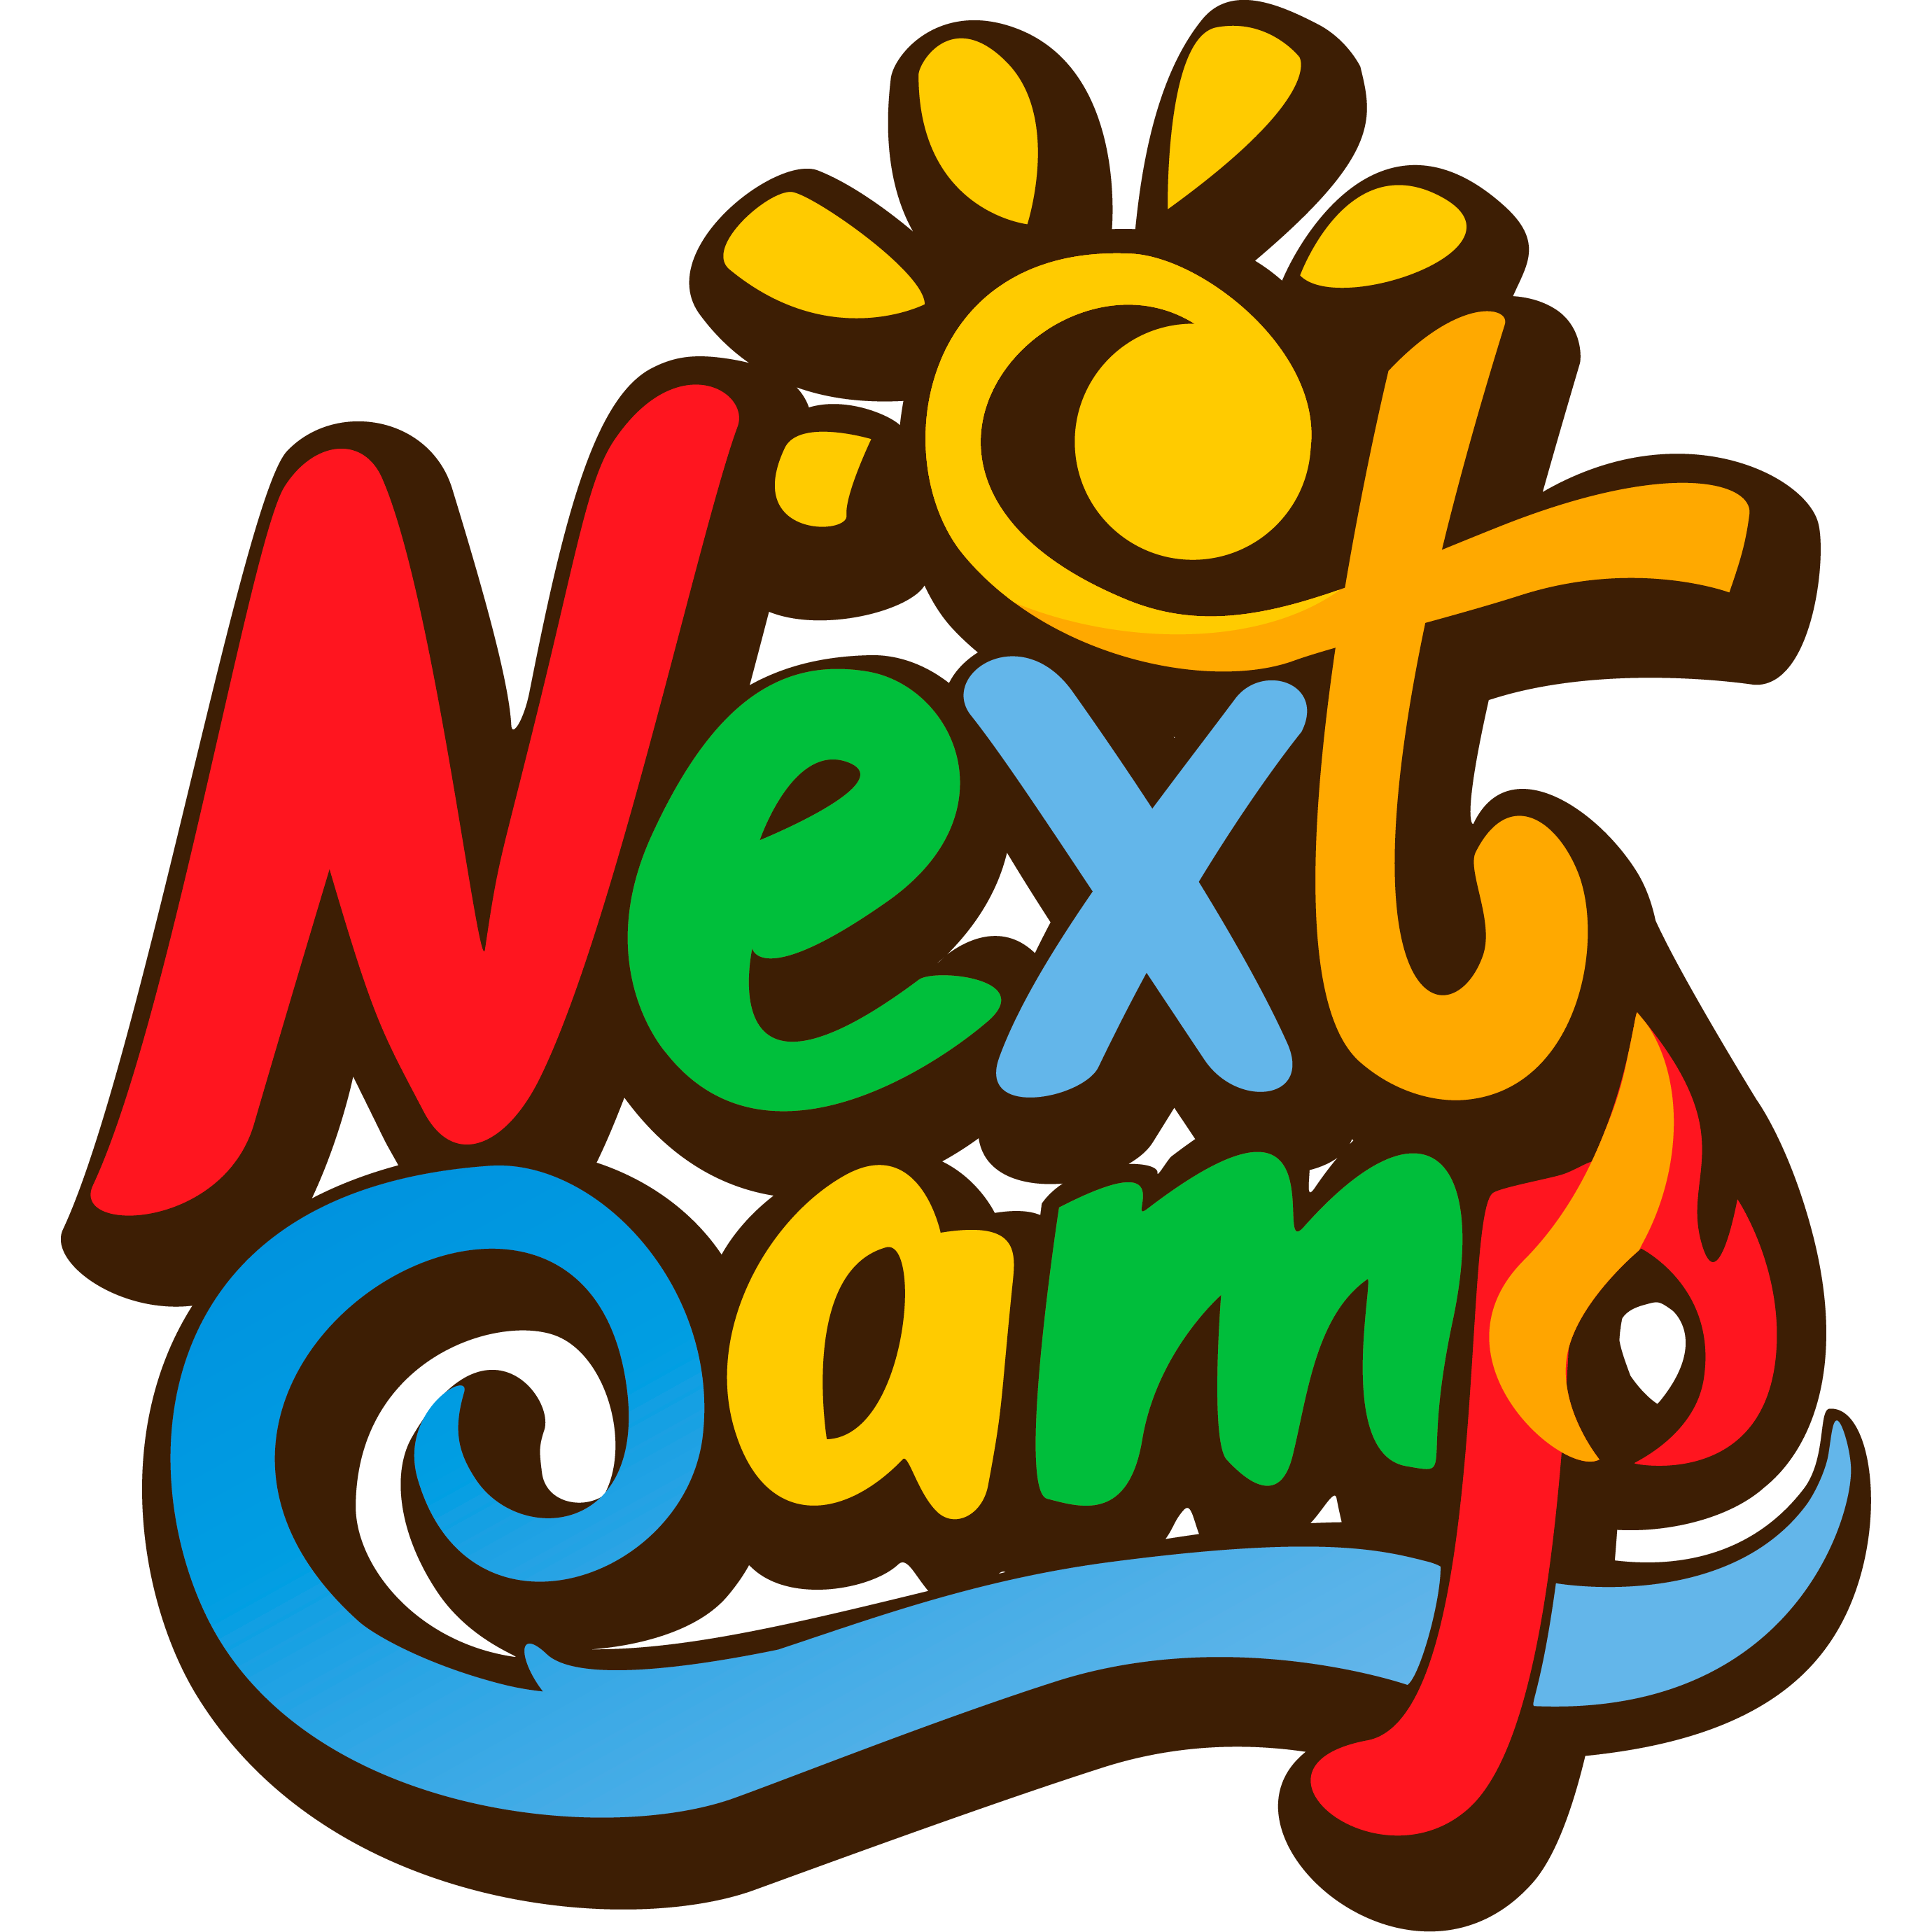 Next camp лагерь